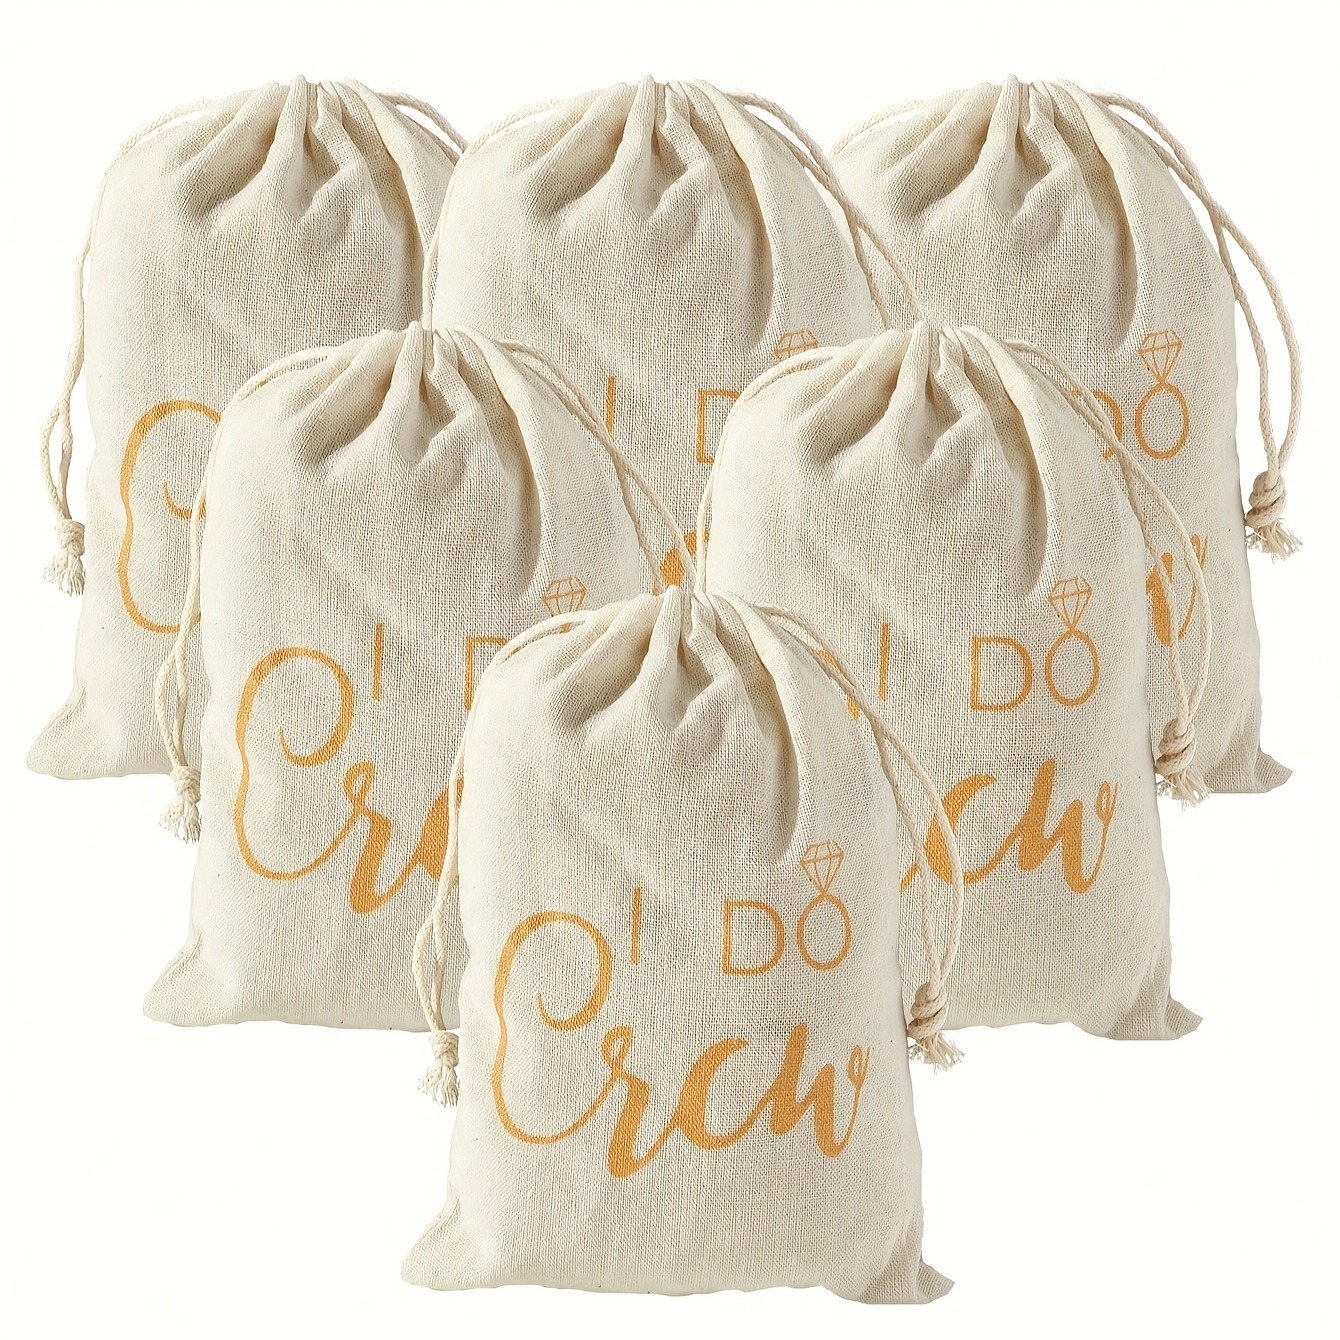 Cotton Hangover Kit Bags, Linen Hangover Kit Bags